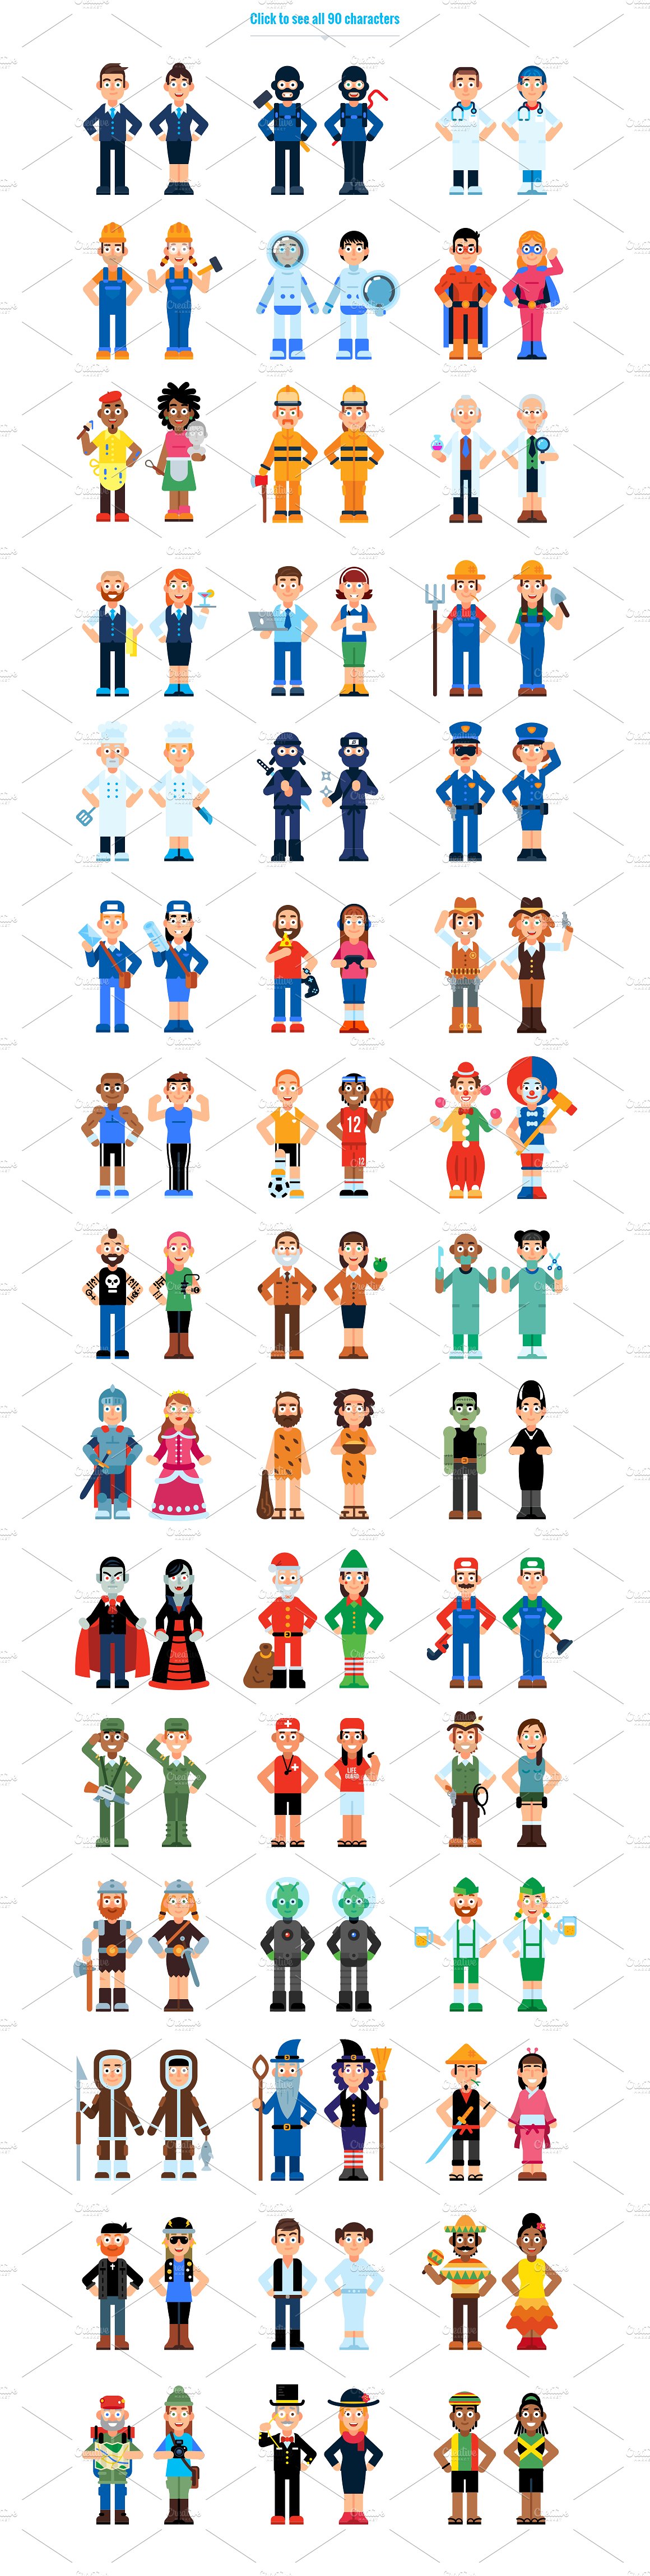 90种不同类型的卡通人物形象图标 90 Miscellaneous Avatar Characters插图(1)